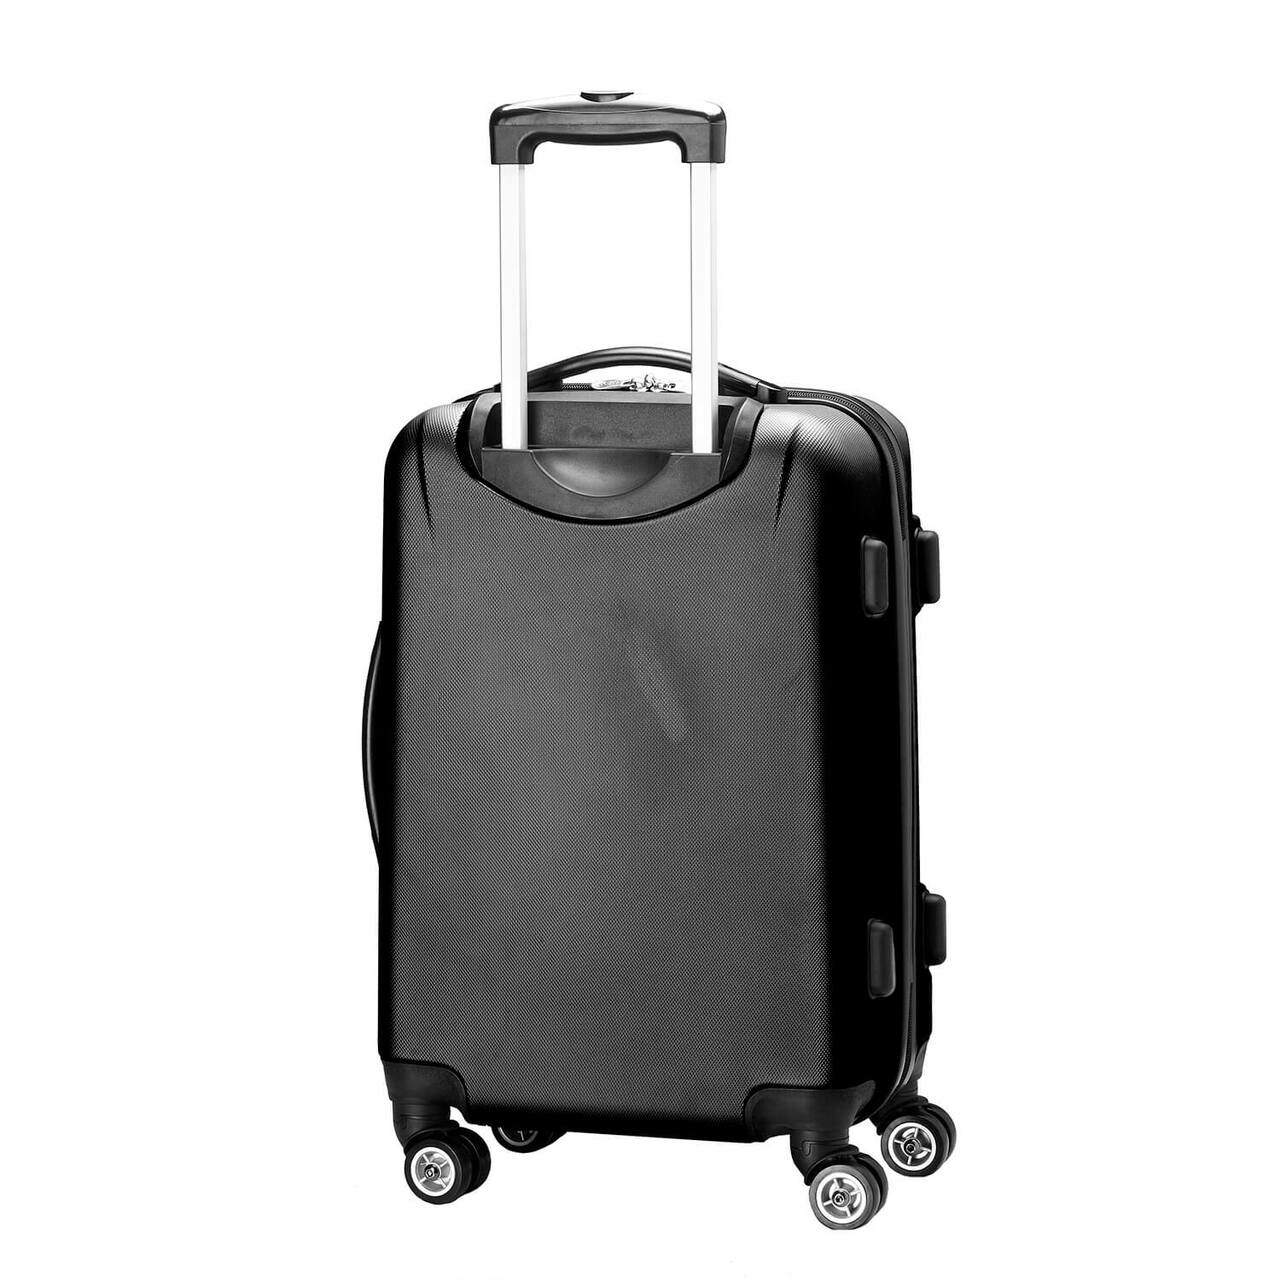 South Carolina Gamecocks 20" Hardcase Luggage Carry-on Spinner